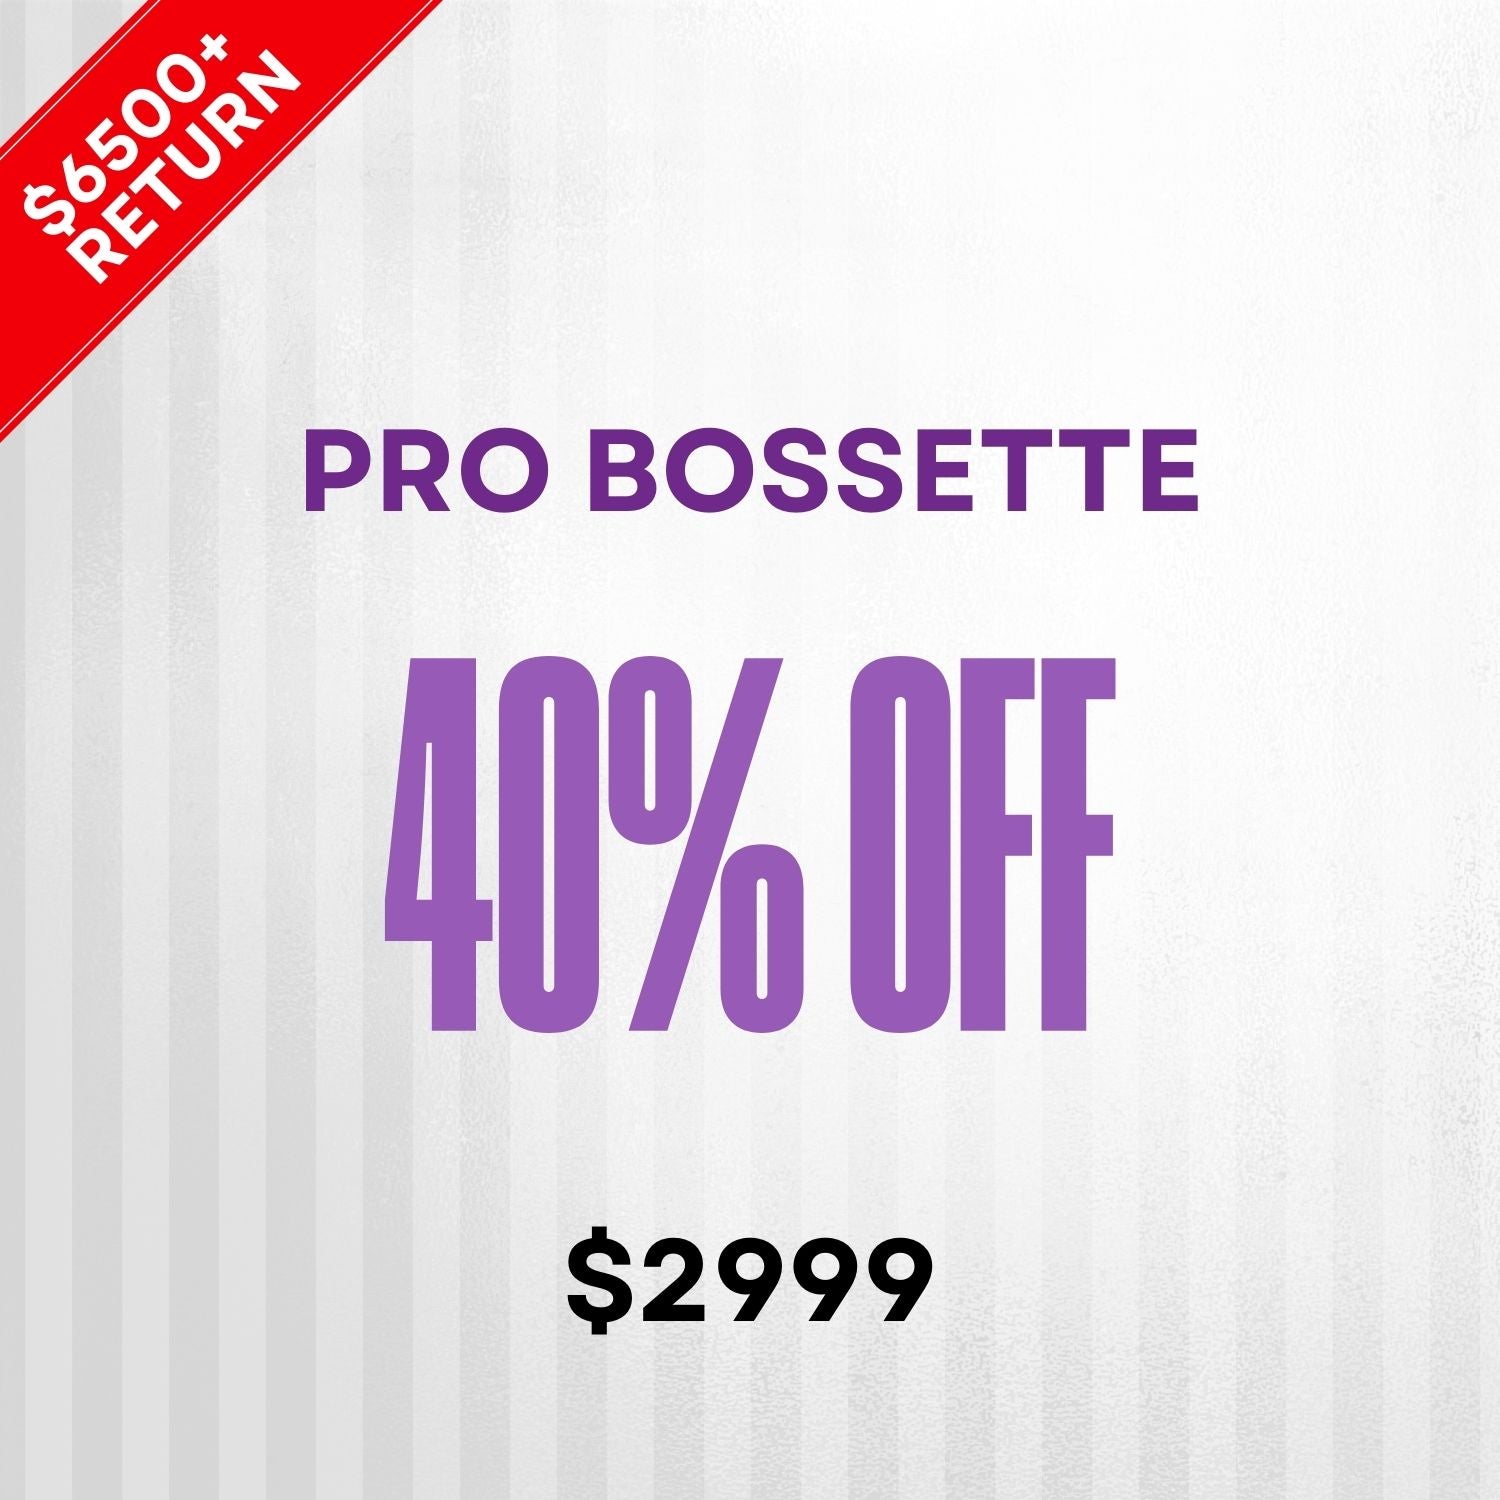 Pro Bossette - 40% off